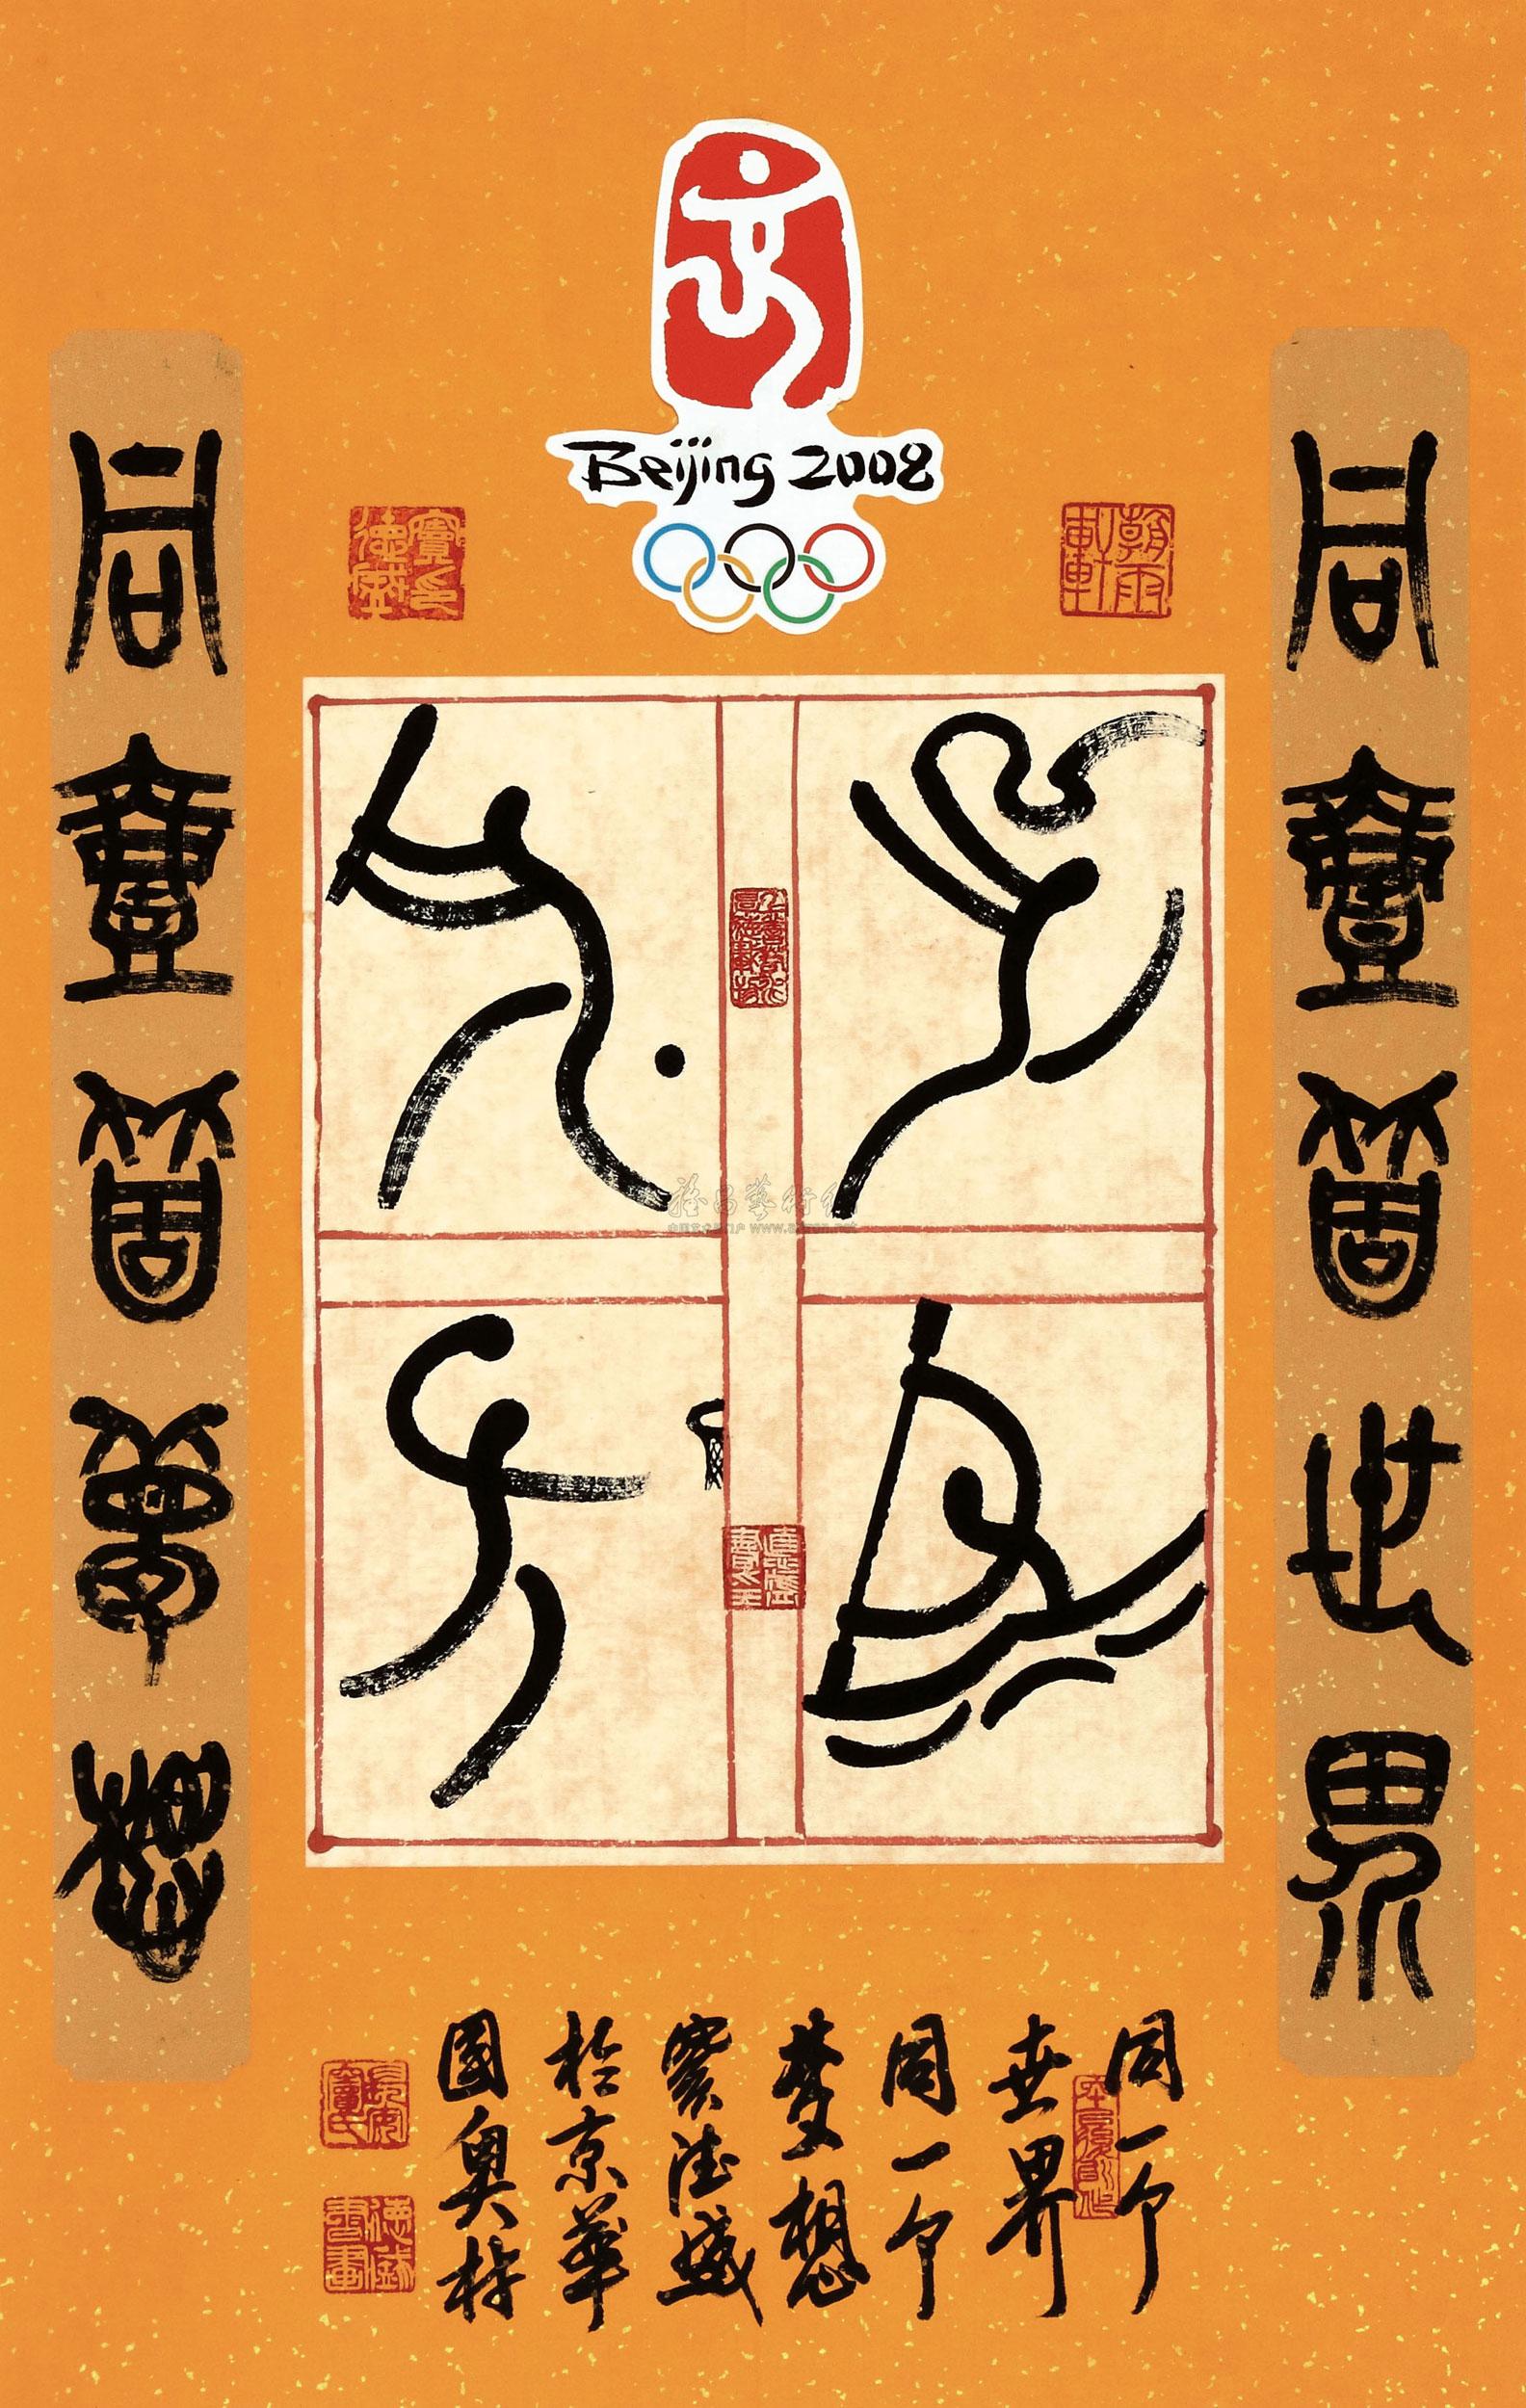 08282012年作2008北京奥运图标水墨纸本